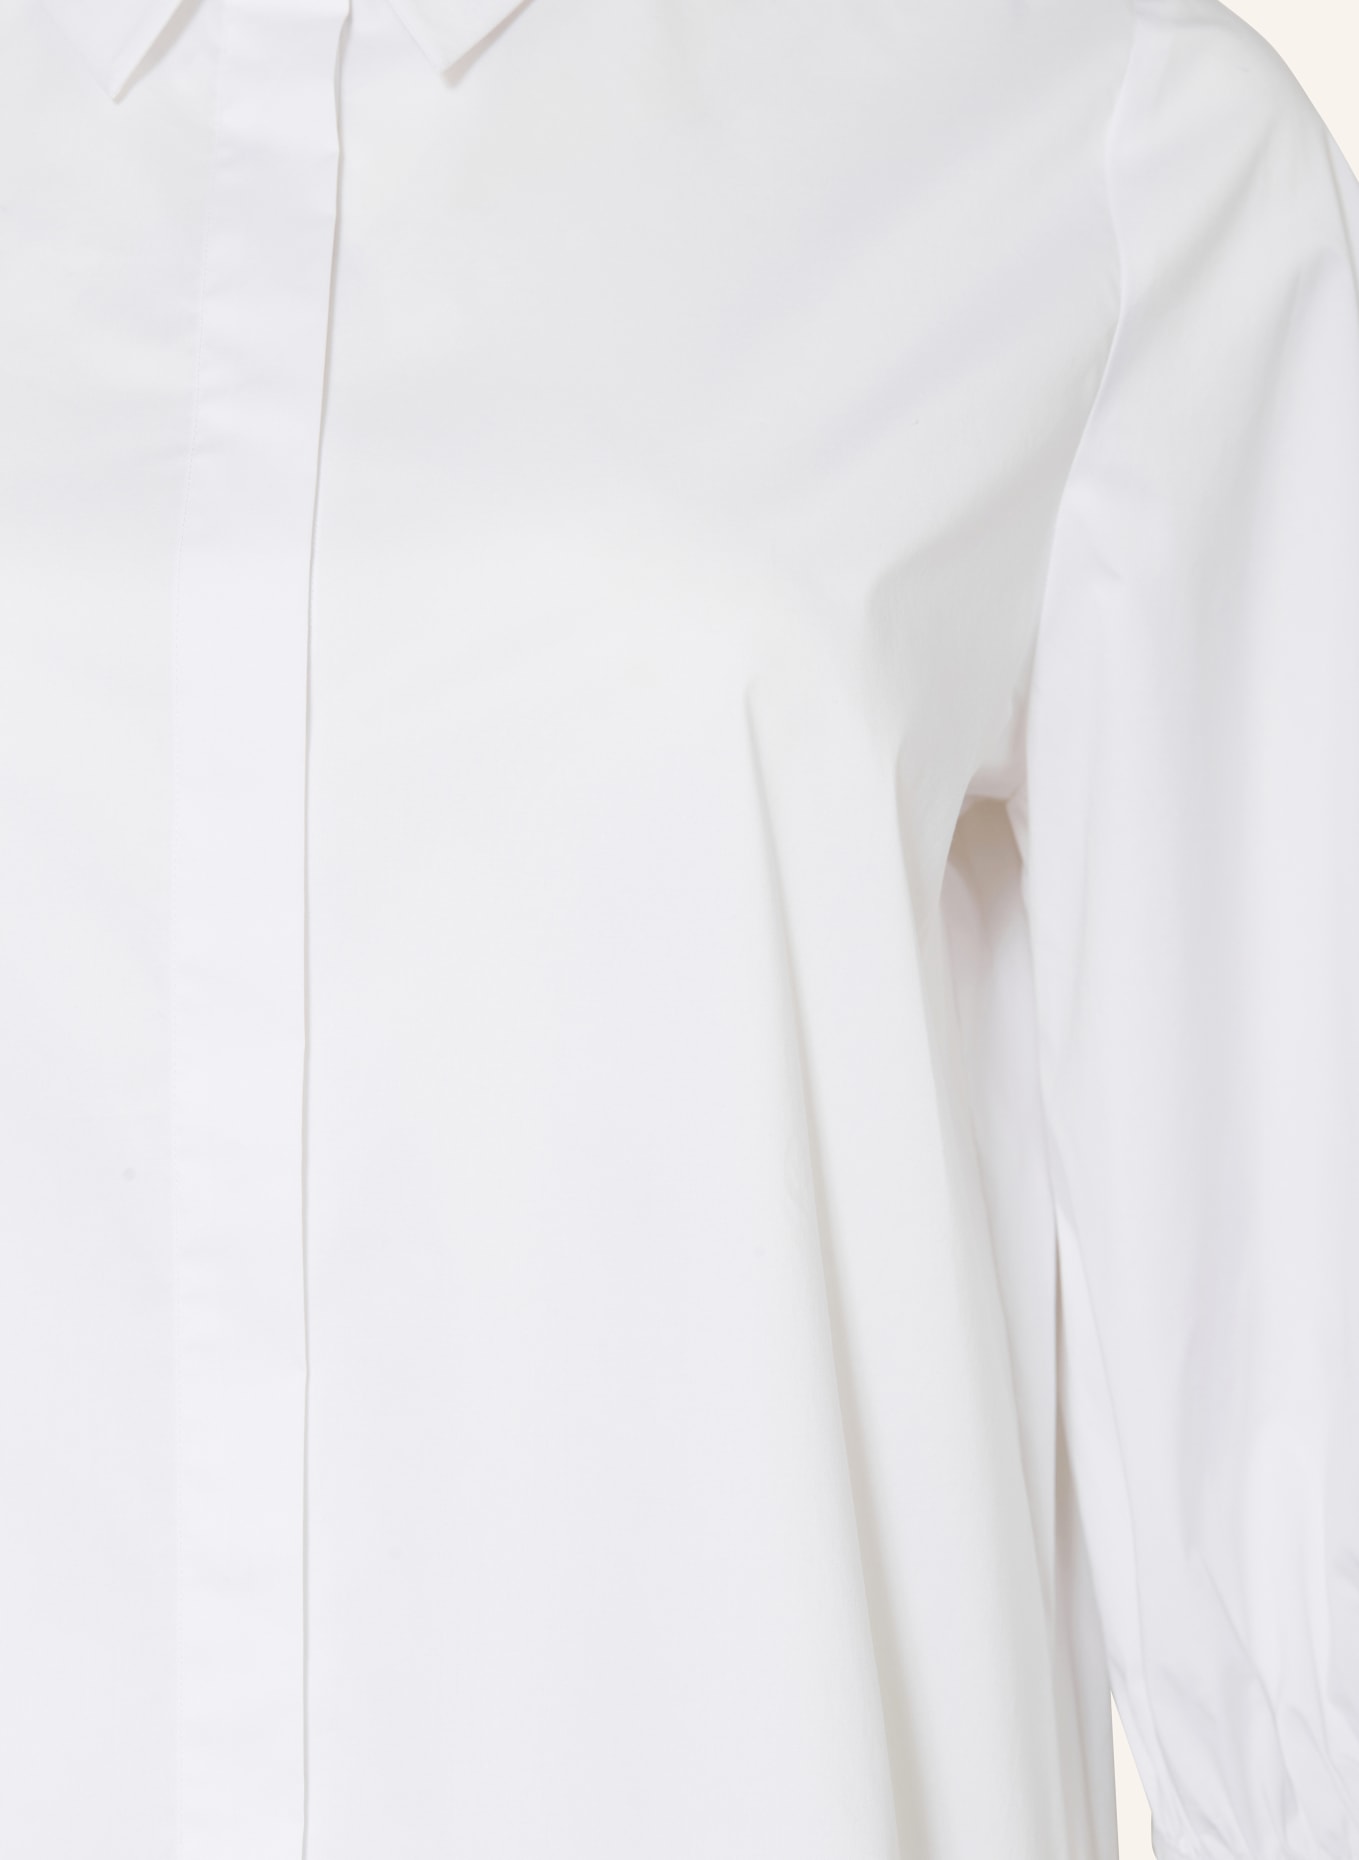 MARINA RINALDI PERSONA Hemdbluse mit 3/4-Arm, Farbe: WEISS (Bild 3)